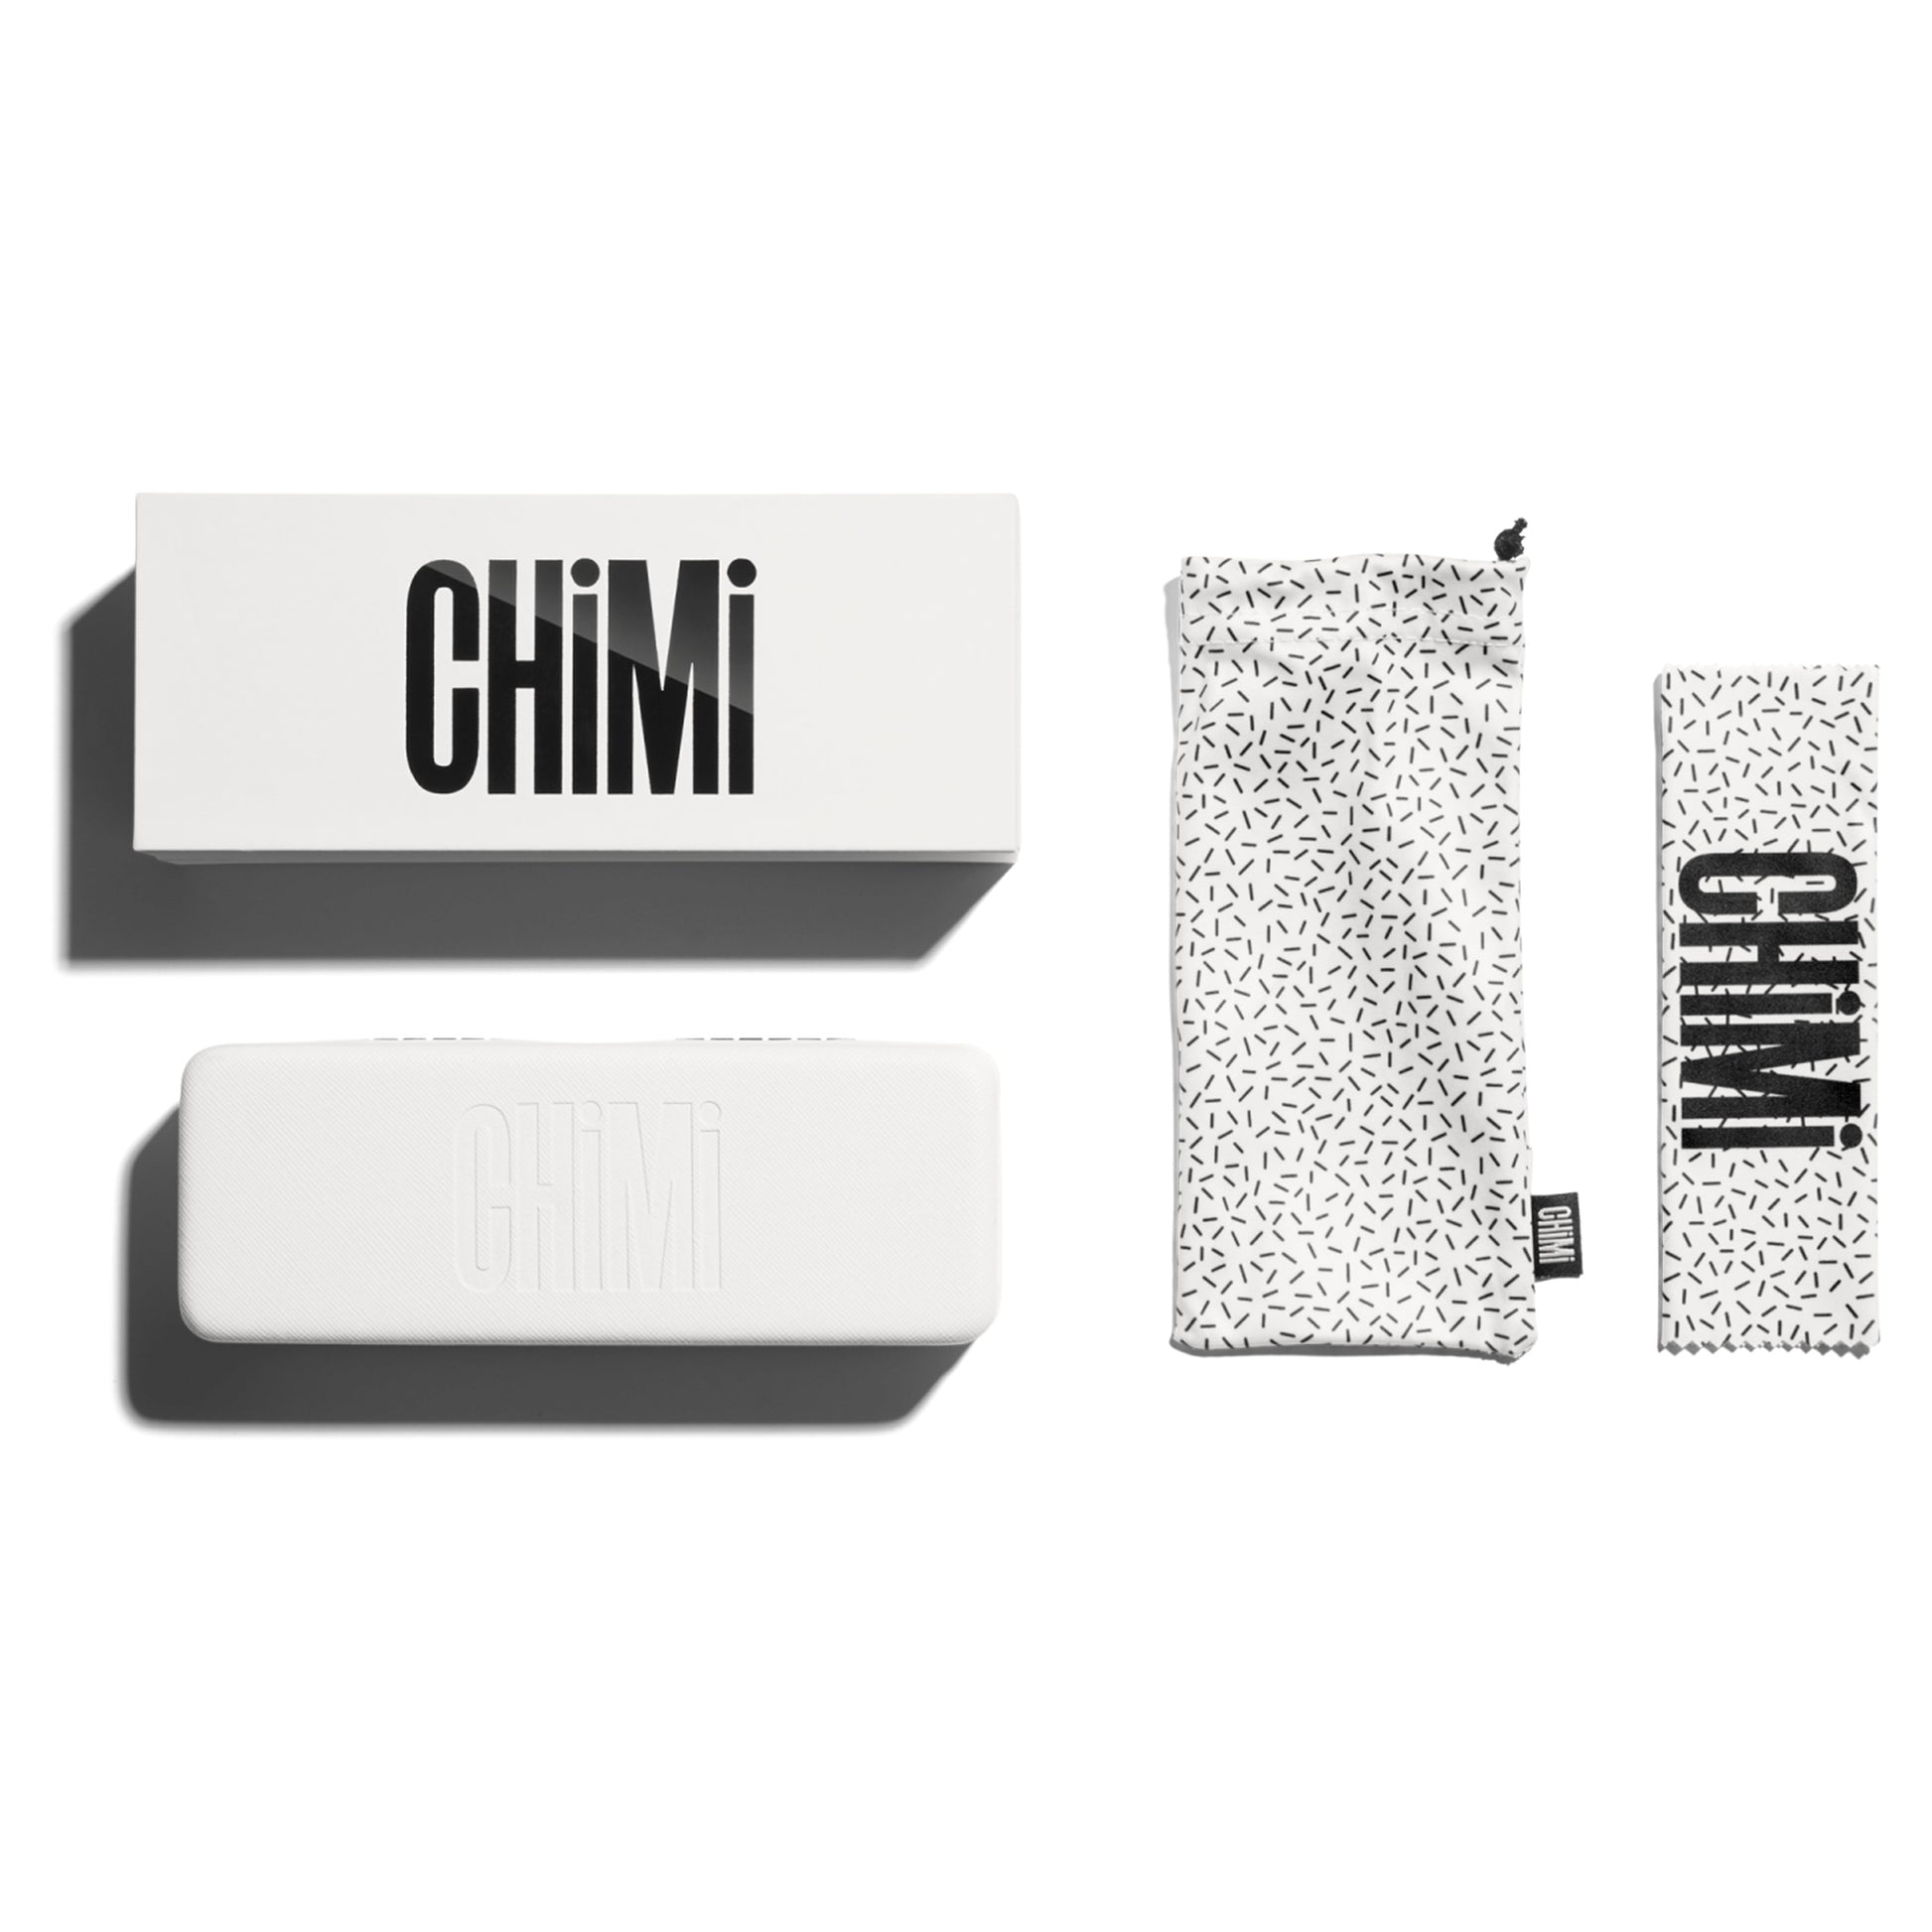 Chimi 001 Litchi Black Eyewear Transparent Packaging